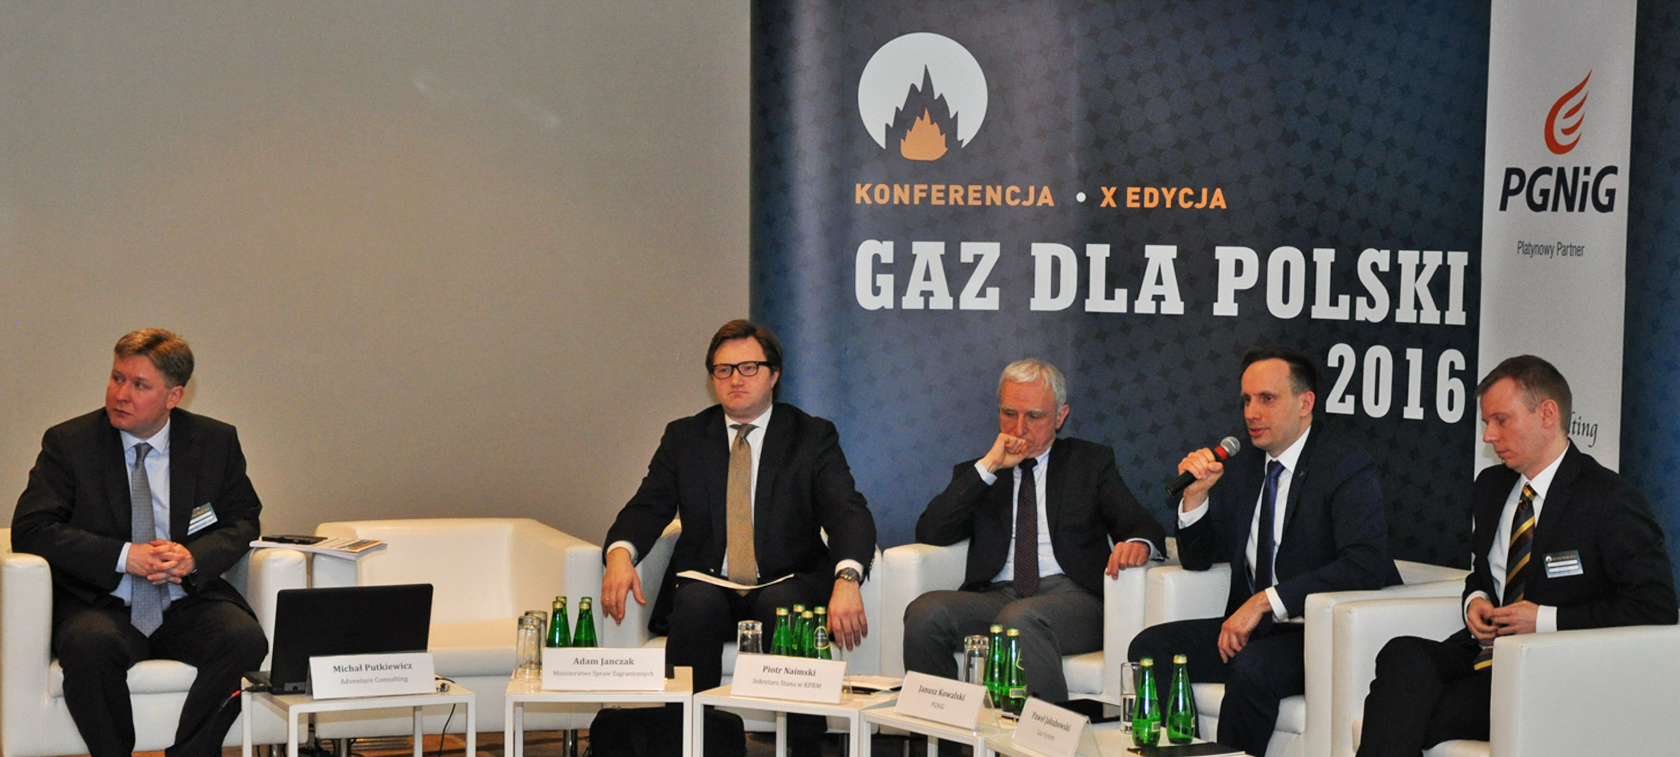 Gaz dla Polski 2016 - szanse i zagrożenia